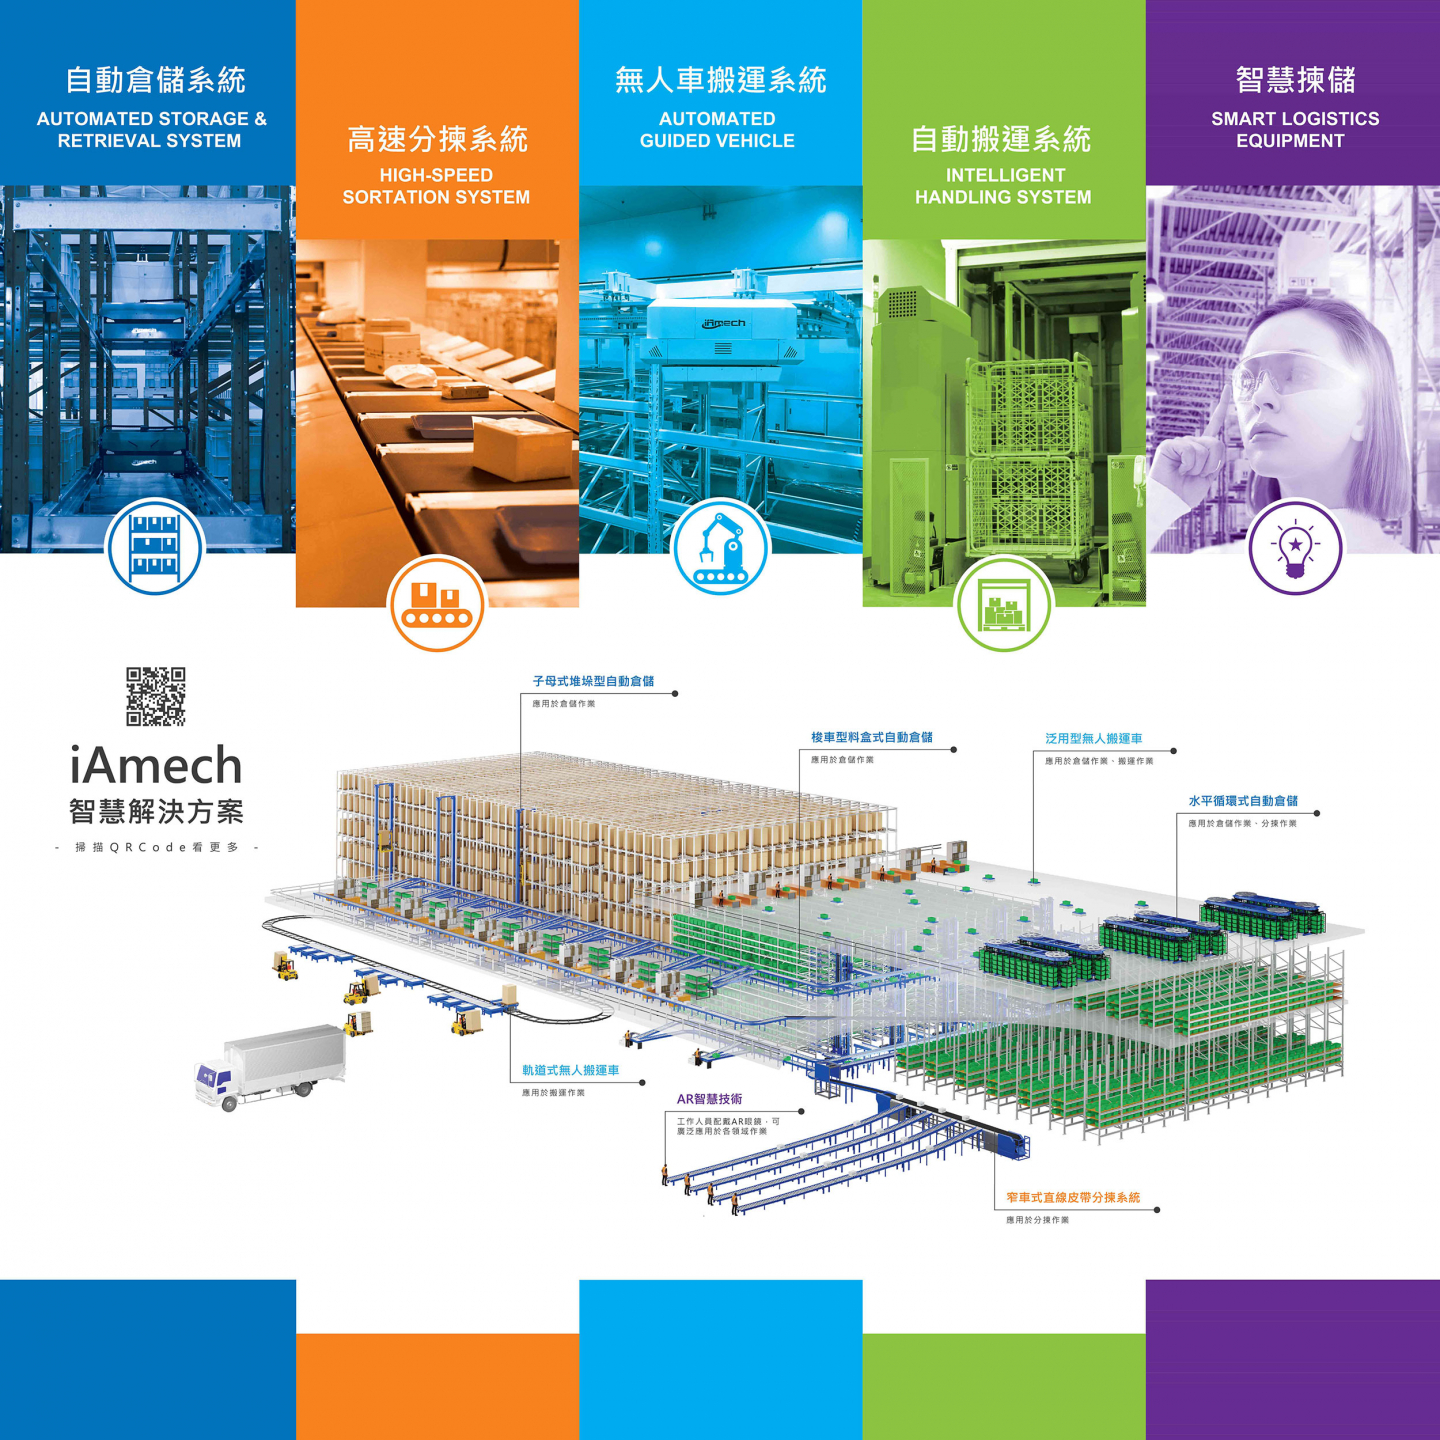 漢錸科技五大產品線，包含自動倉儲系統、高速分揀系統、無人車搬運系統、自動搬運與智慧揀儲(周邊輔助設備)等